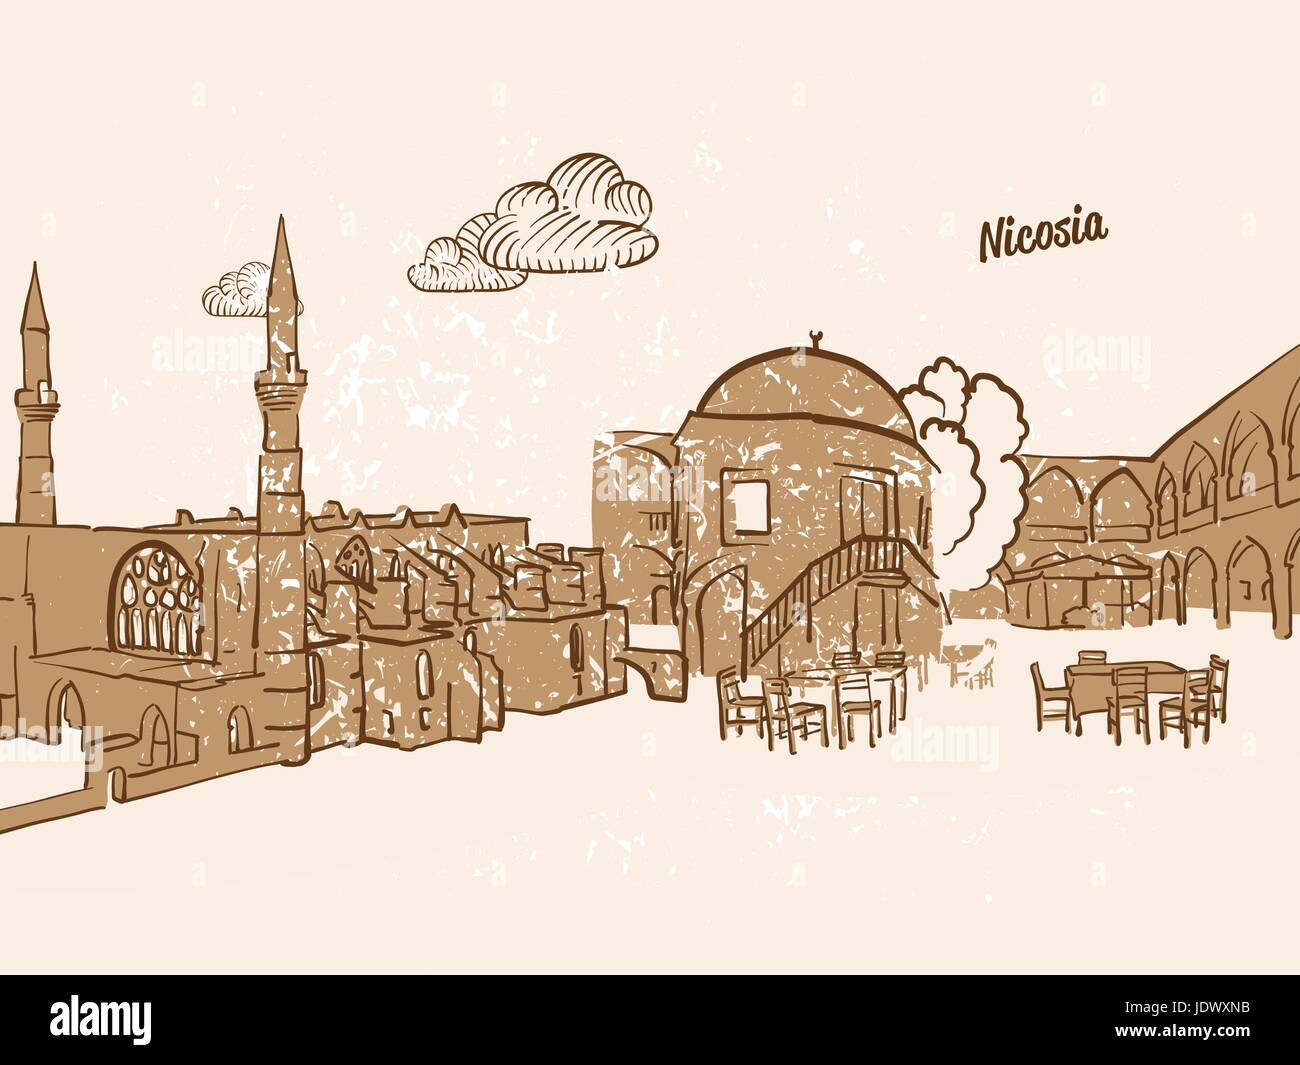 Nicosia, Chipre, Tarjeta de felicitación, imagen dibujada a mano, famosa capital europea, el estilo de época, ilustración vectorial Ilustración del Vector